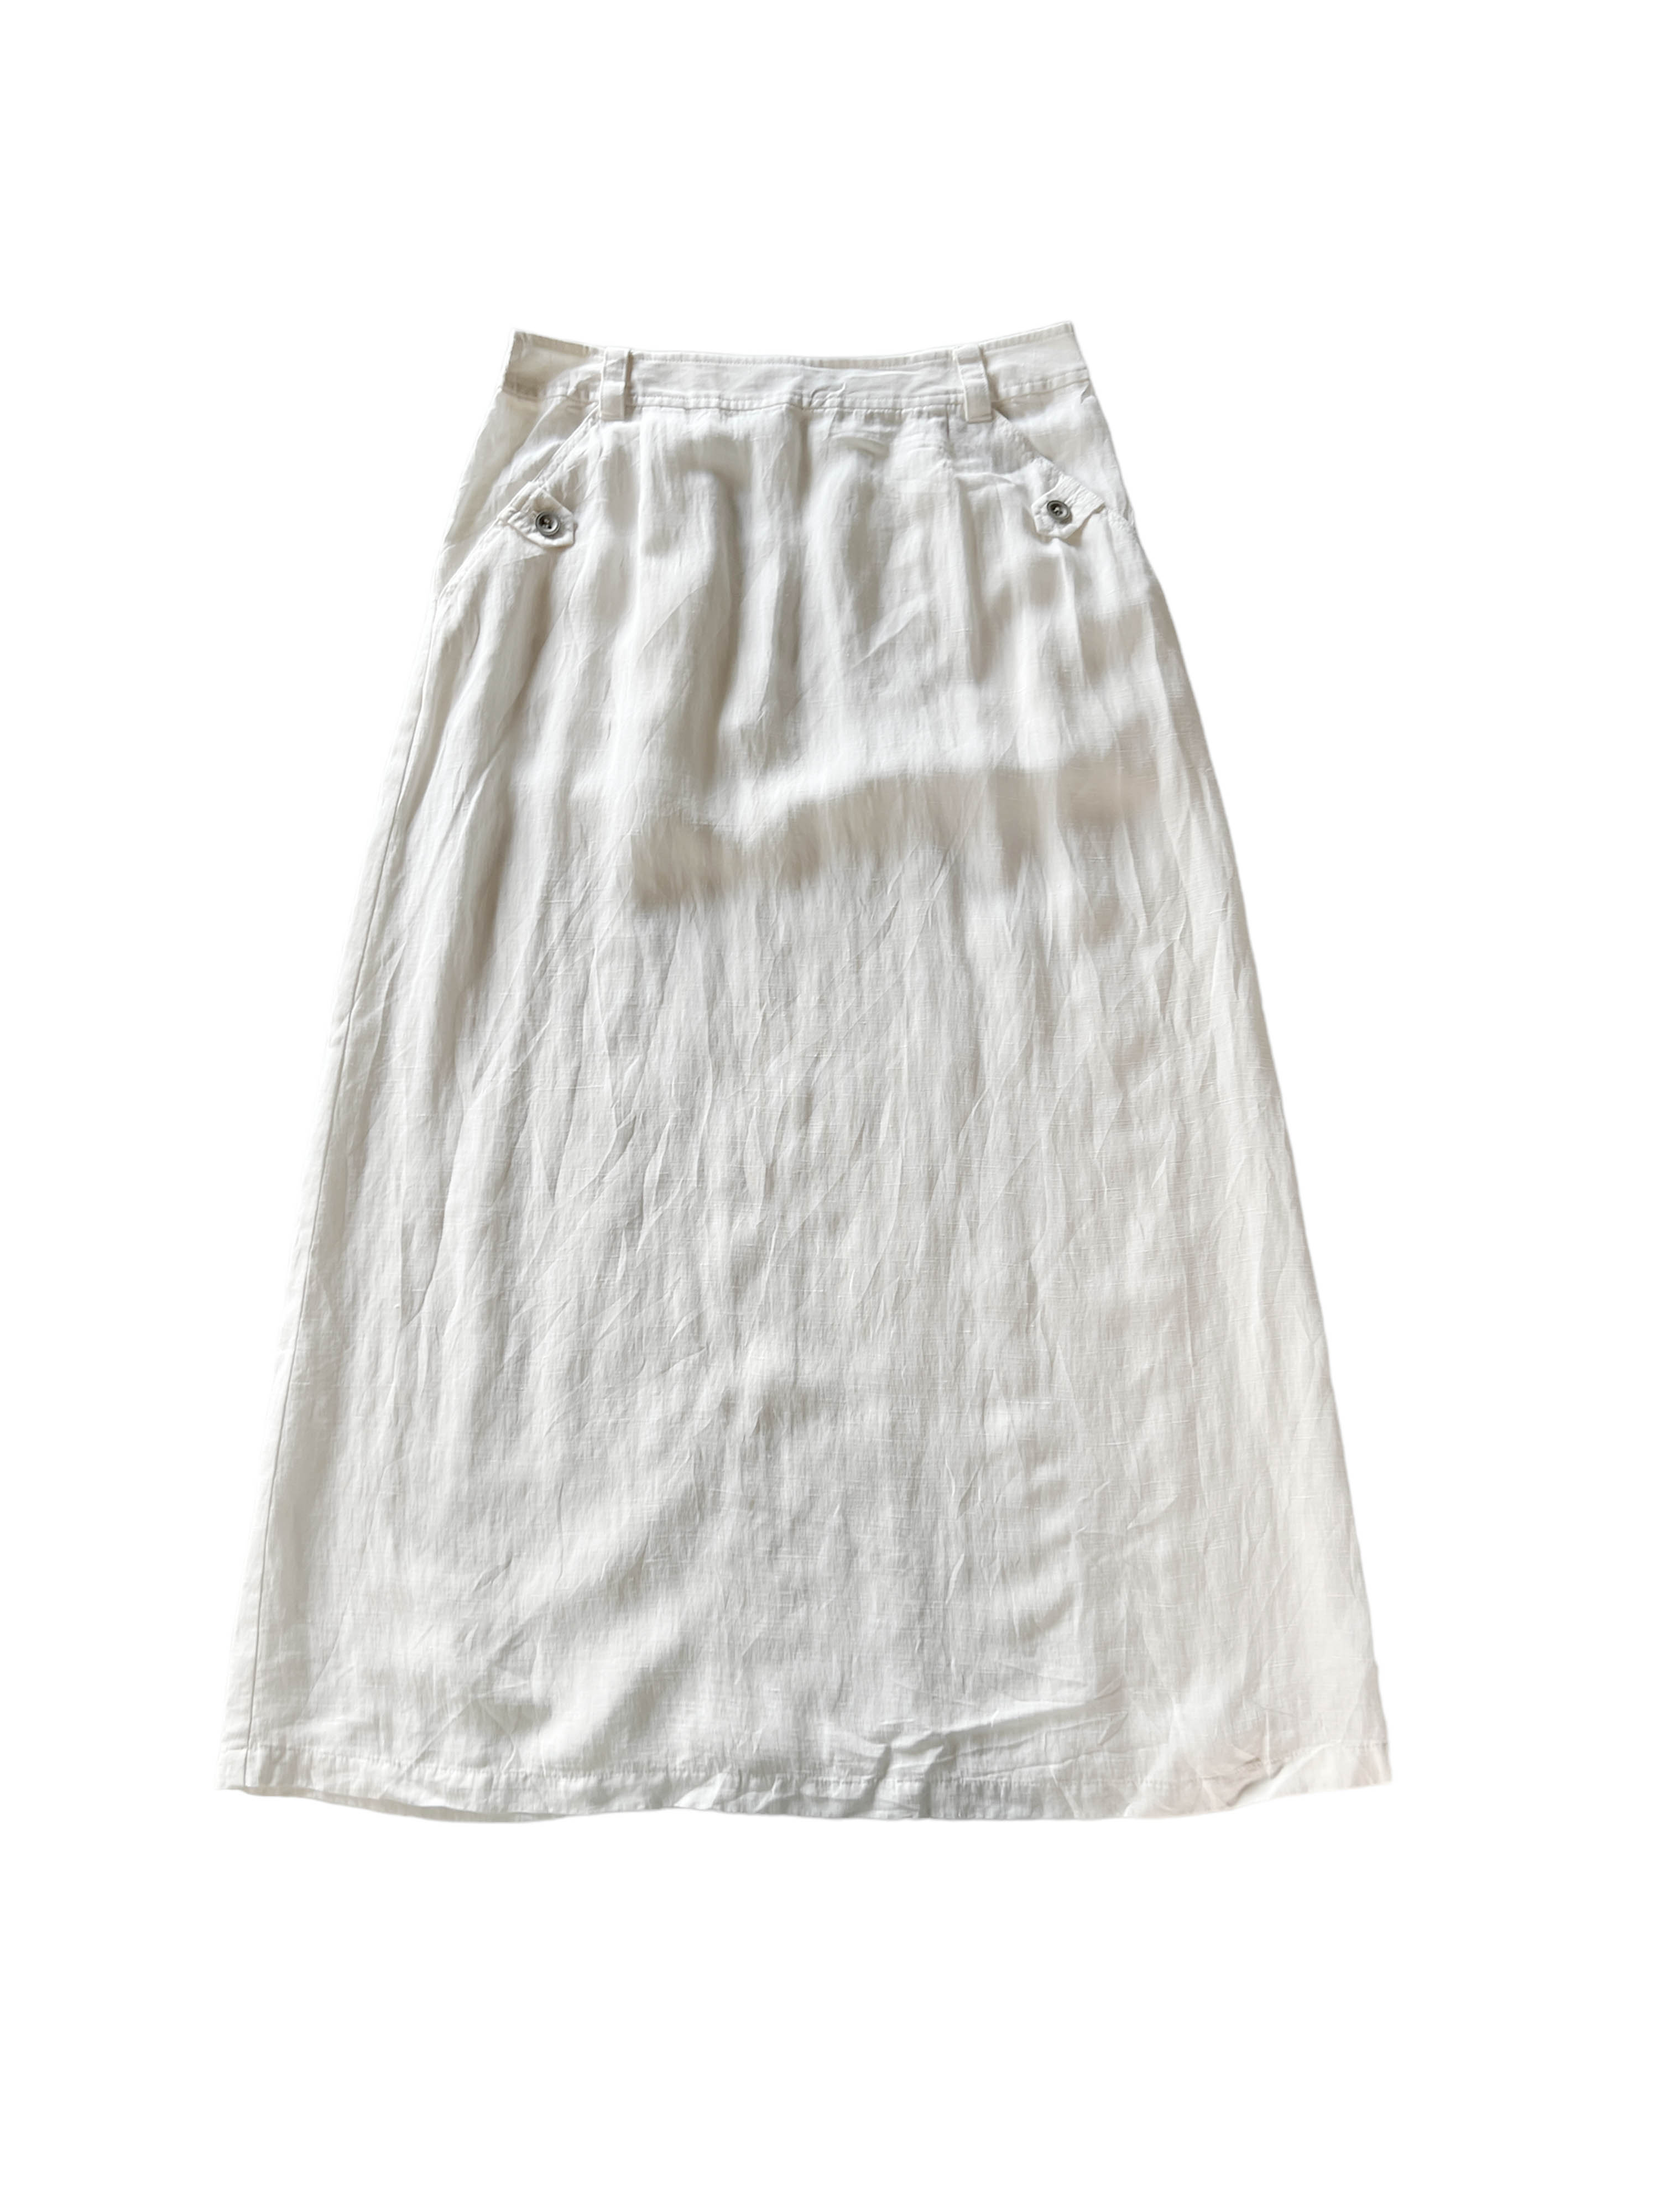 Monegal white linen skirts